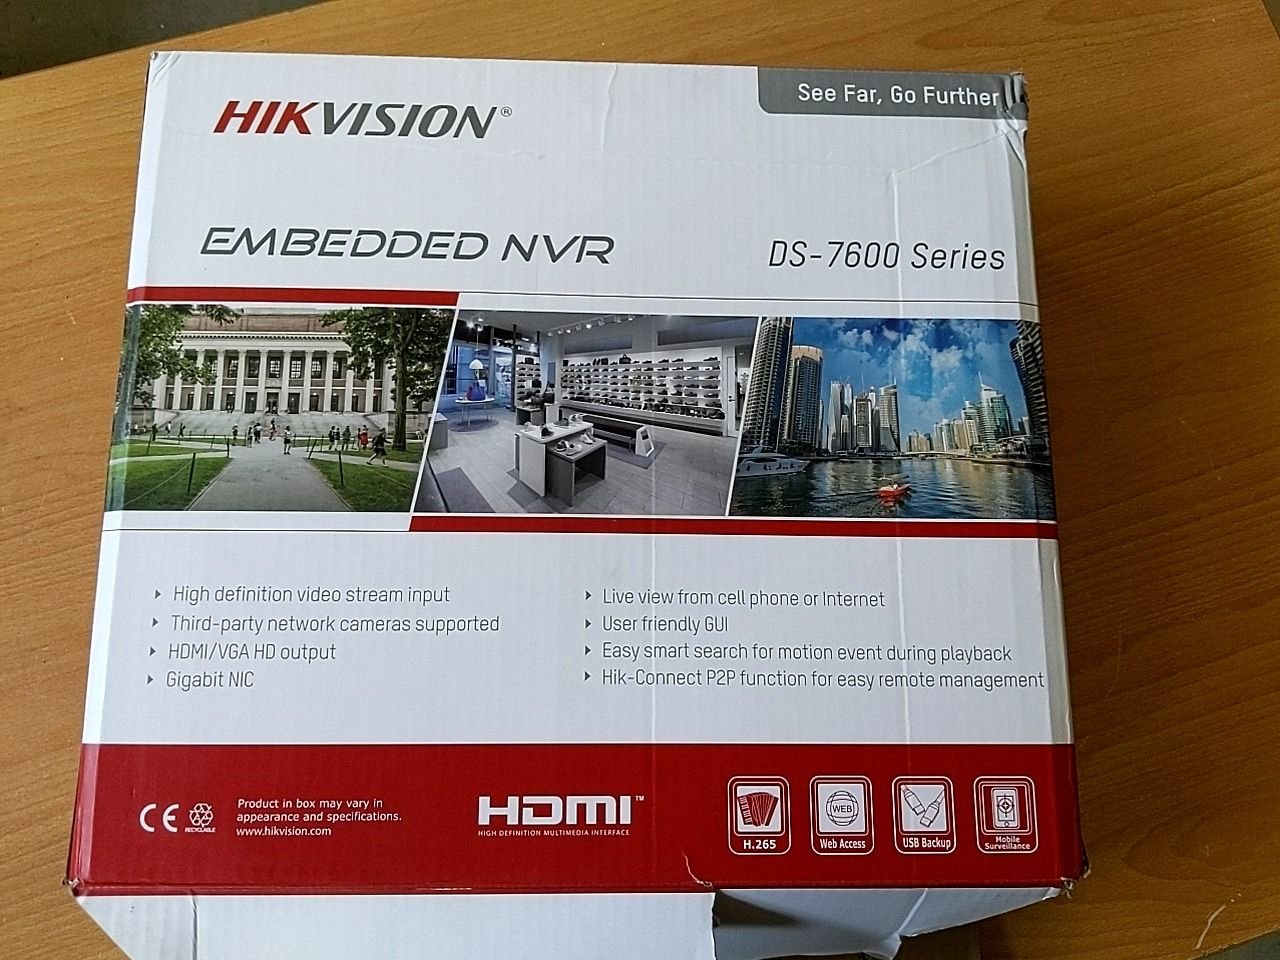 Síťový rekordér Hikvision DS-7616 NXl-l2/16p/s